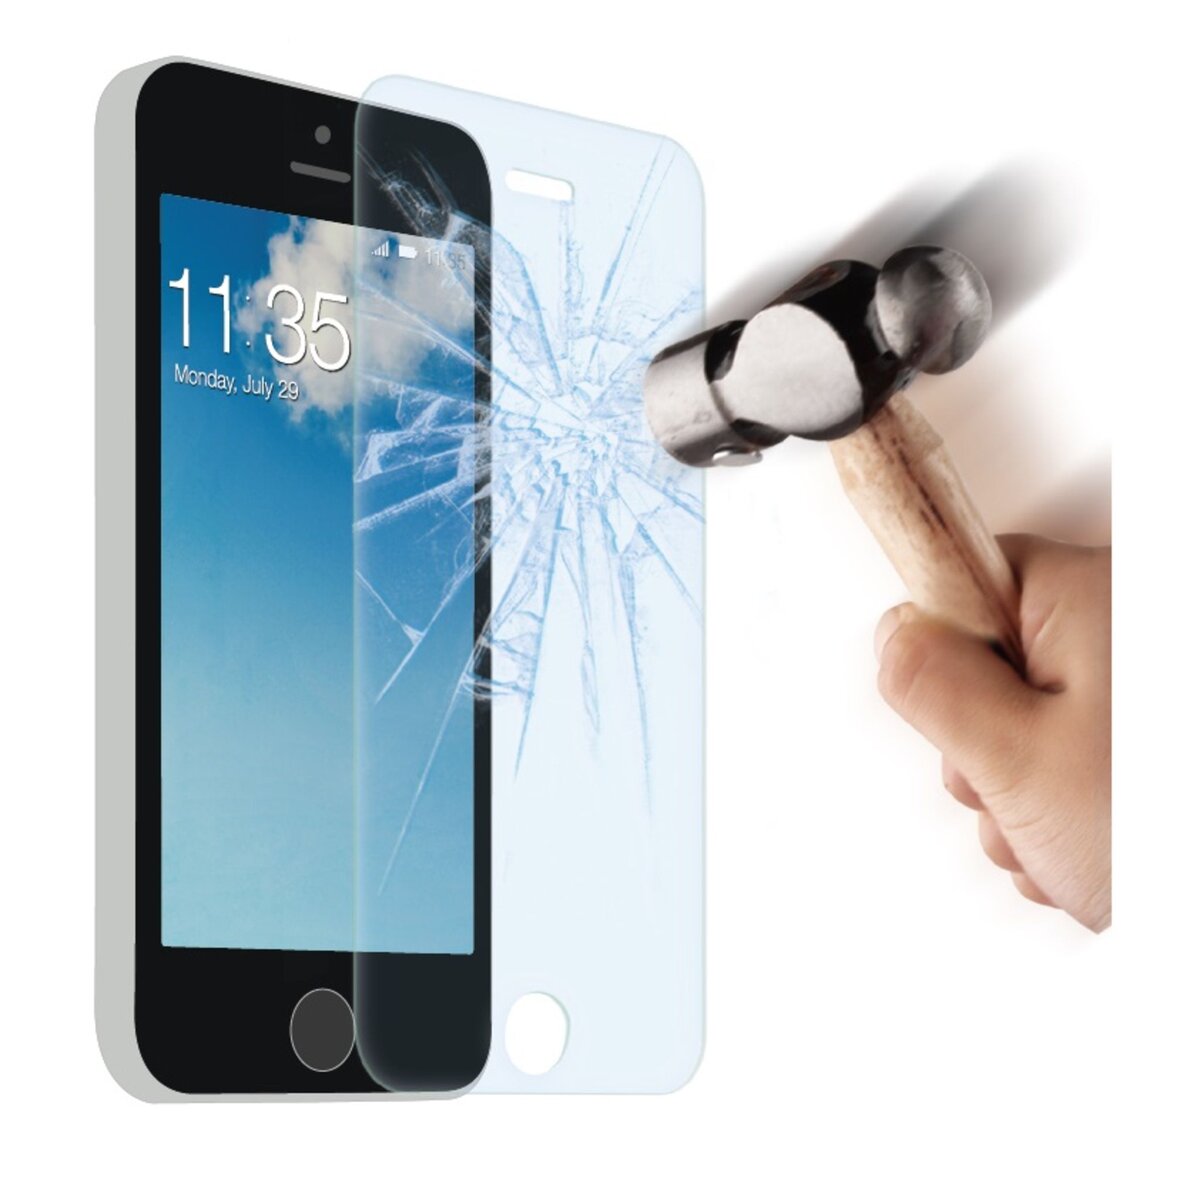 QILIVE QILIVE - Protection Écran Verre Trempé pour iPhone 6+/6S+